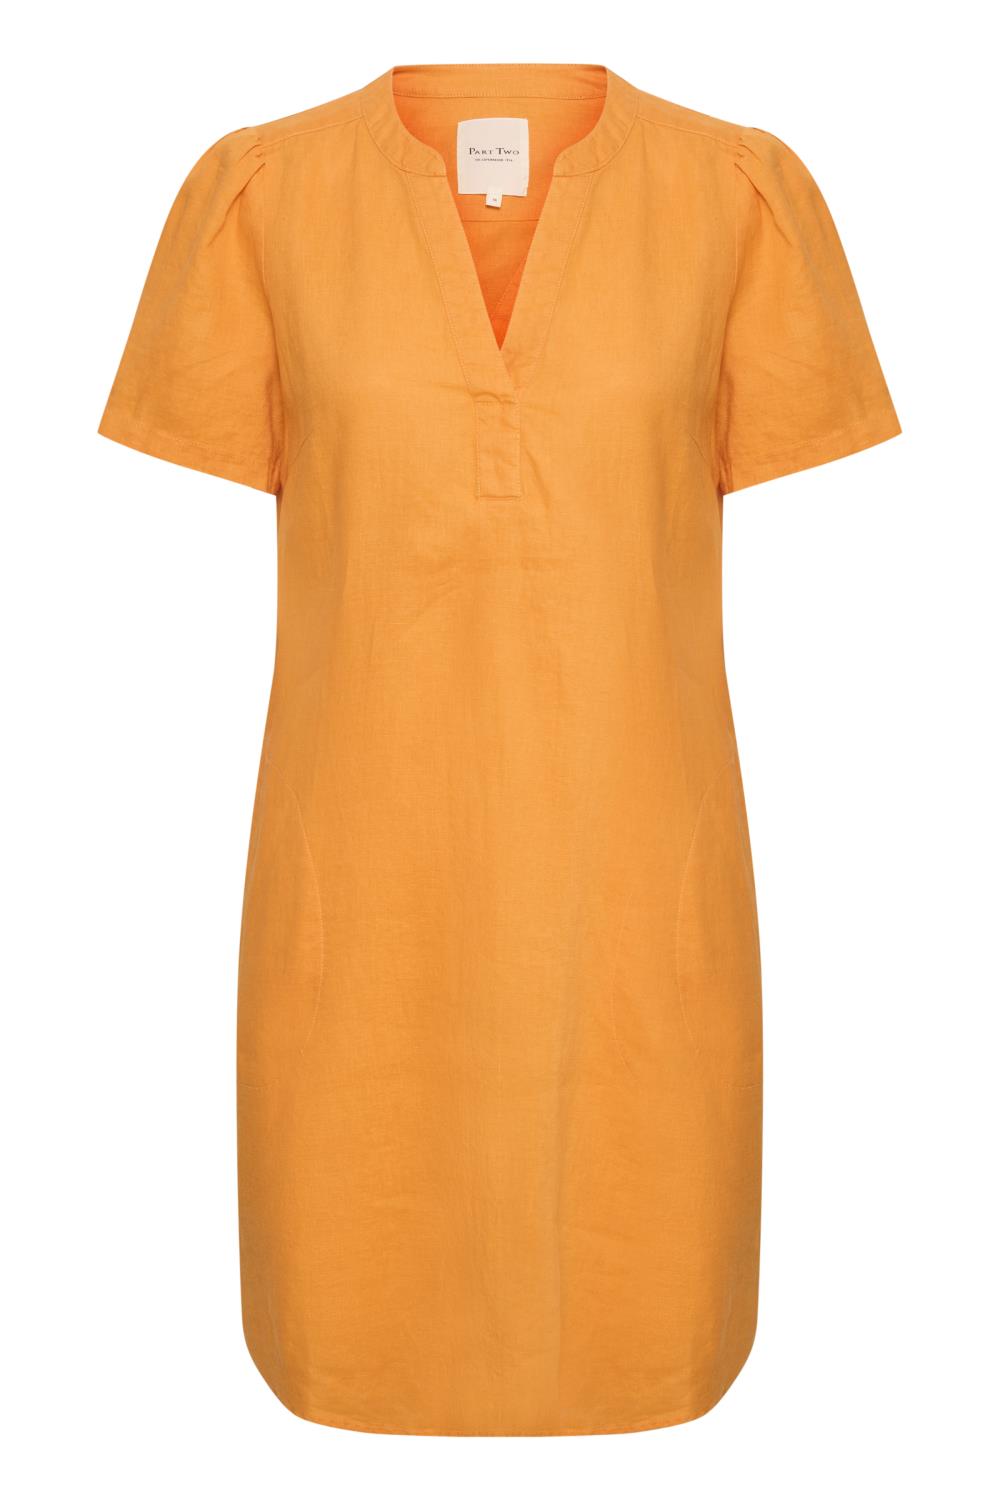 Part Two Aminase Dress, lin, aprikos